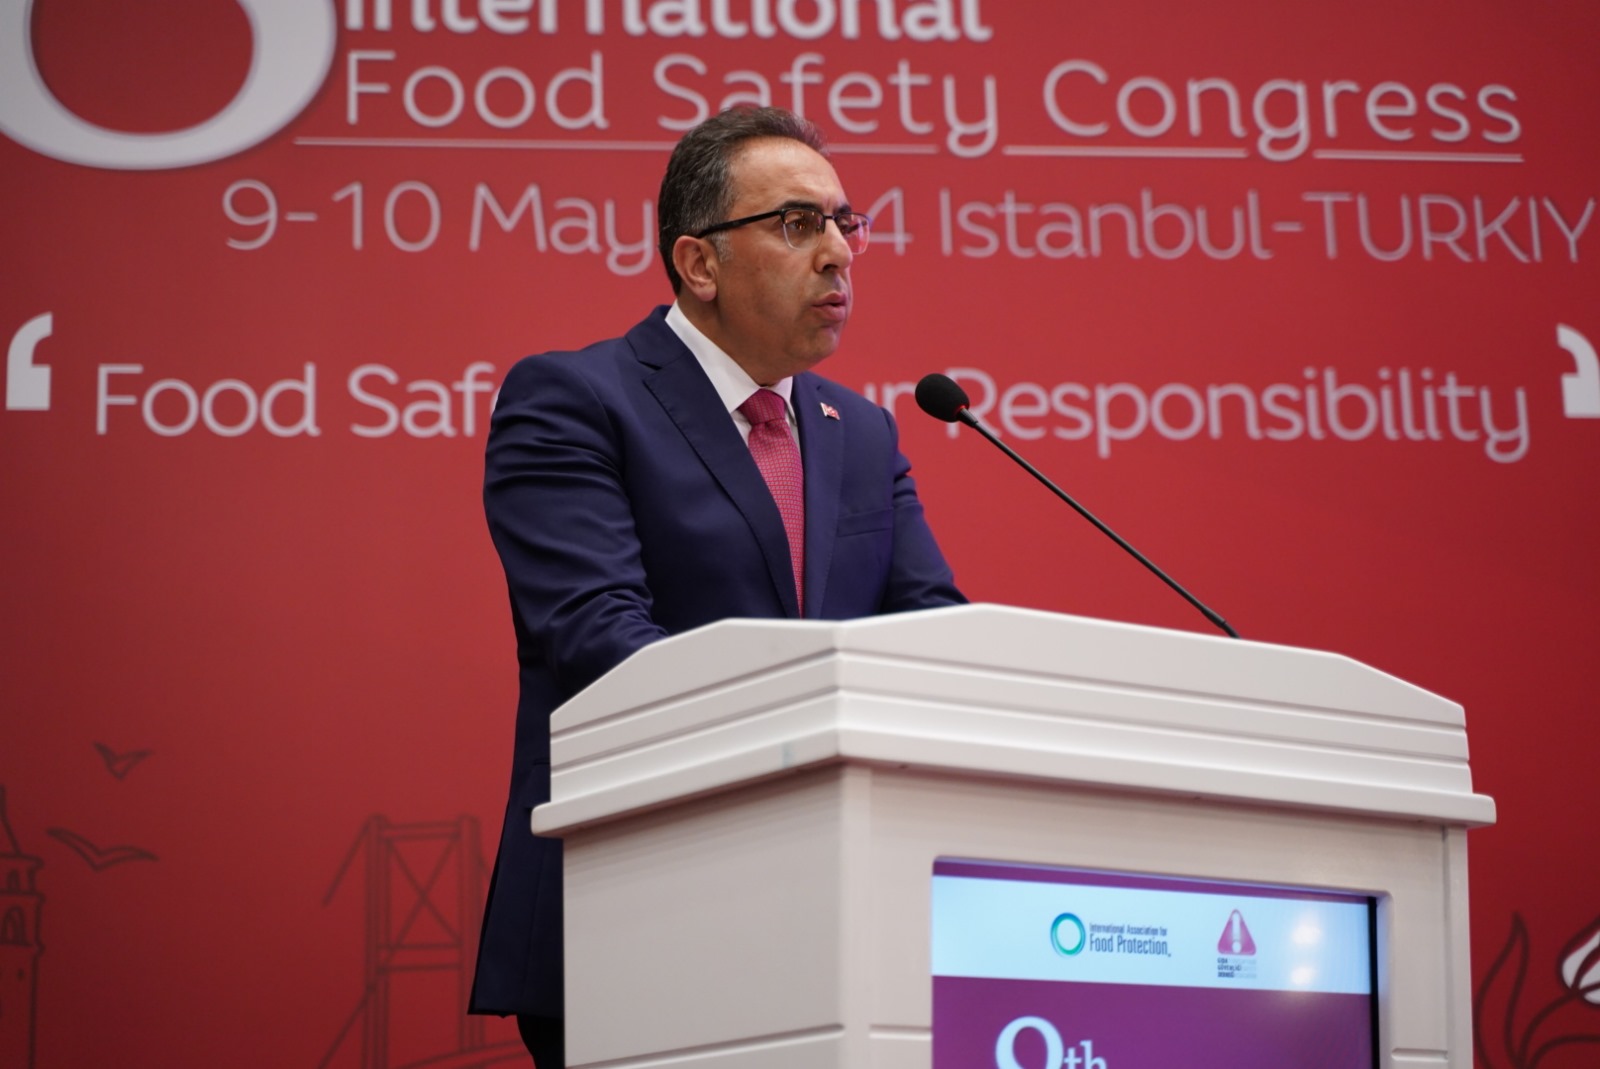 8. Uluslararası Gıda Güvenliği Kongresi başladı